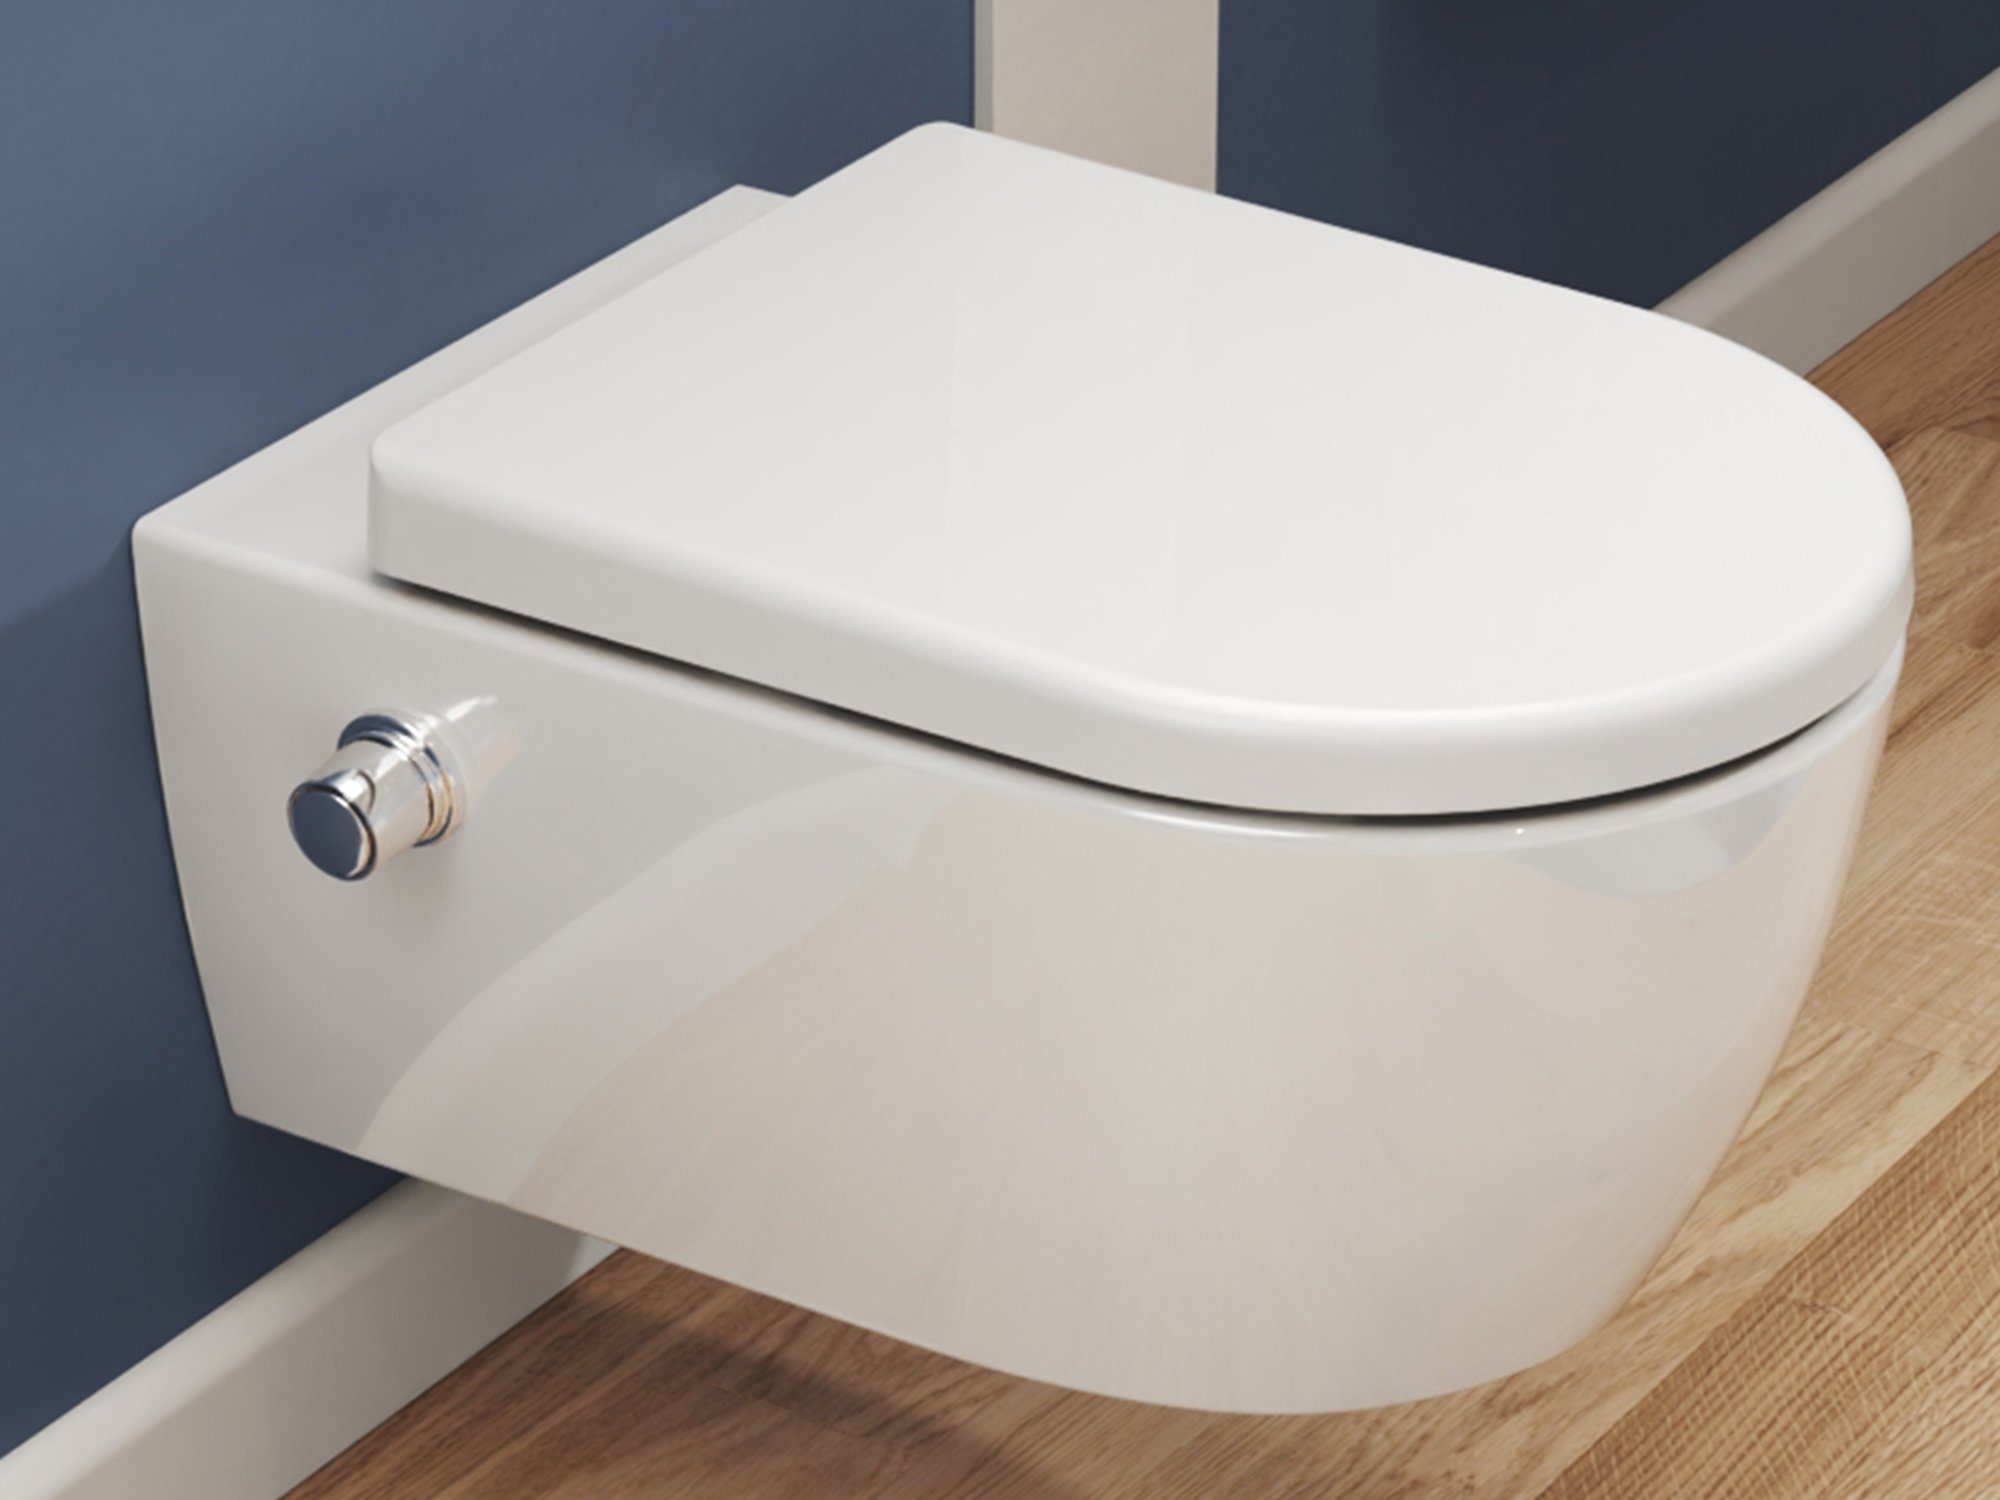 SSWW Dusch-WC mit Softclose WC-Sitz Tiefspül-WC spülrandloses WC Taharet, wandhängend, Abgang waagerecht